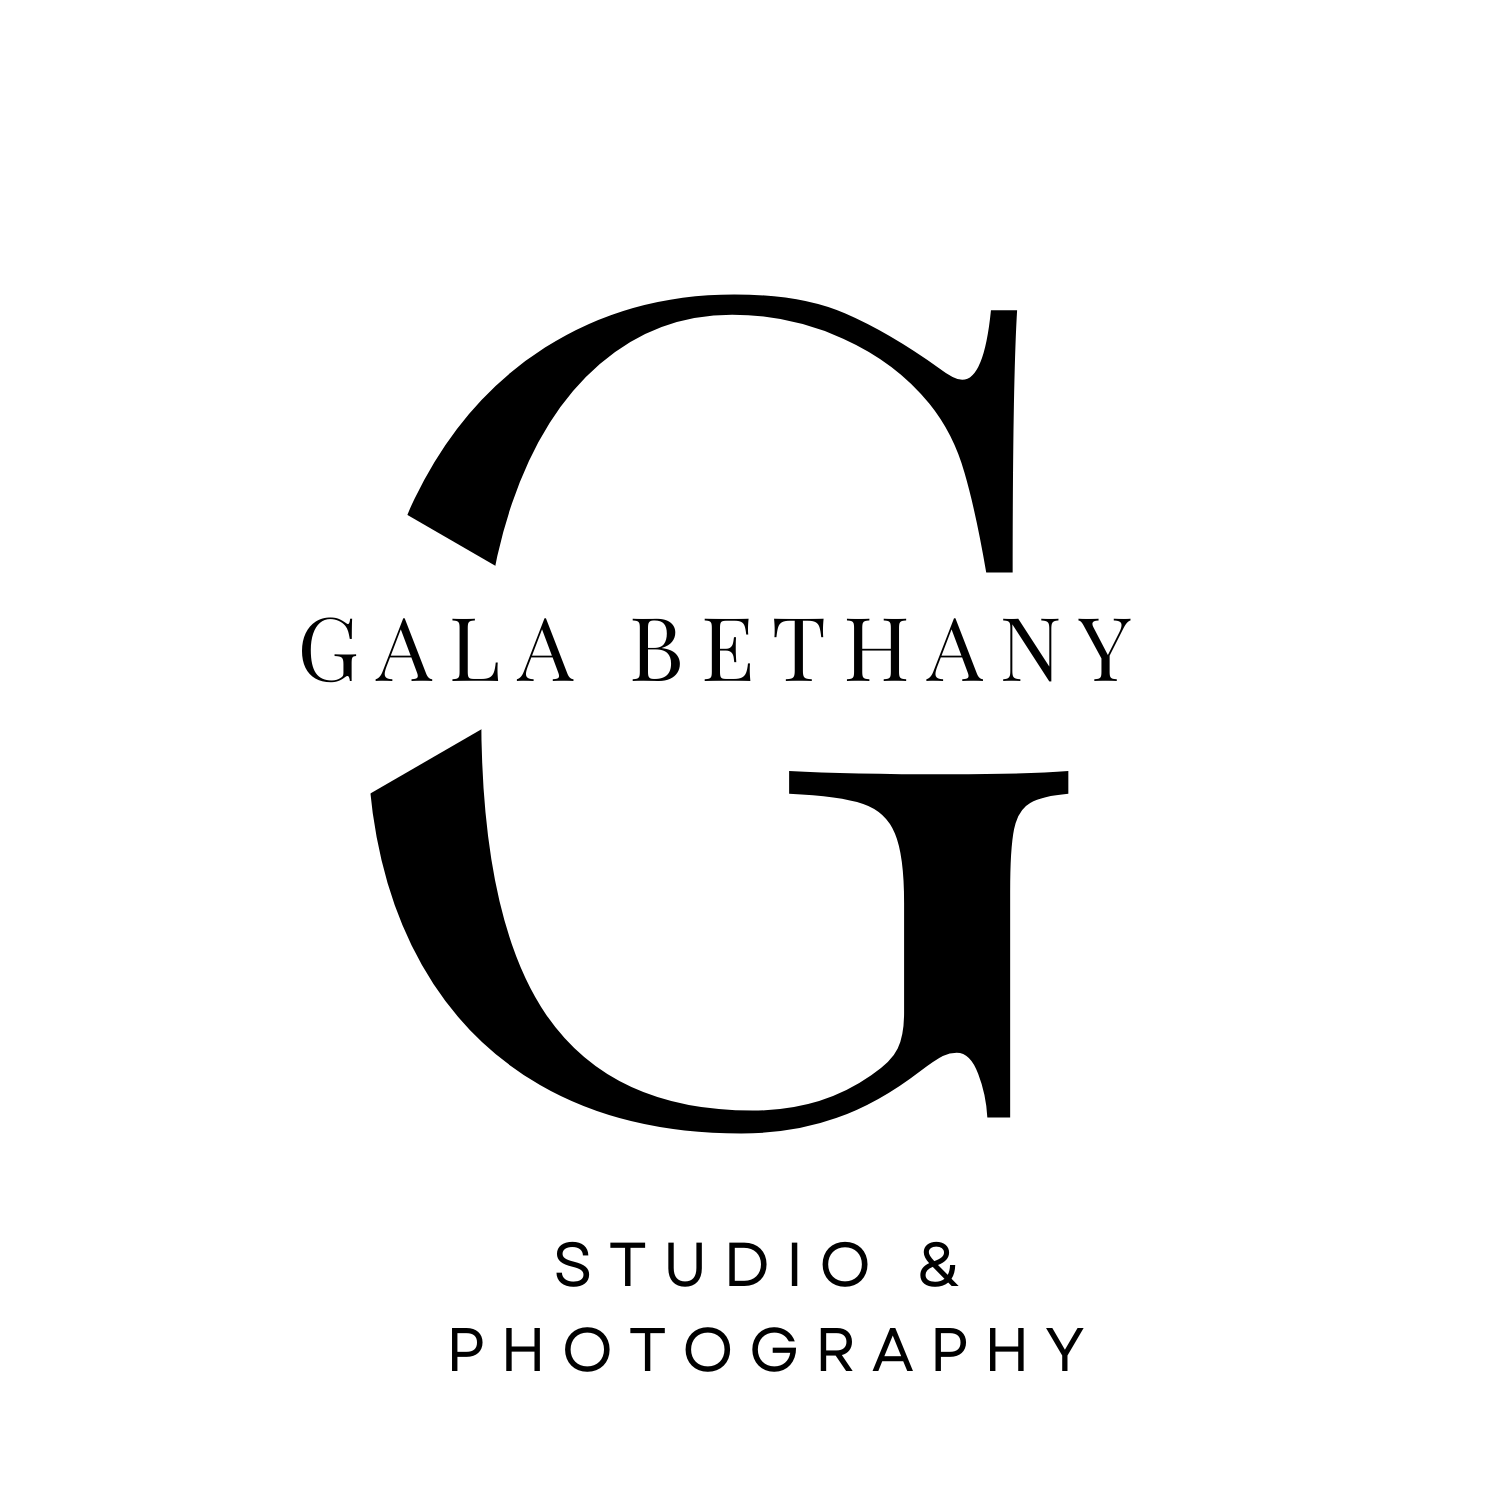 GALA BETHANY STUDIO